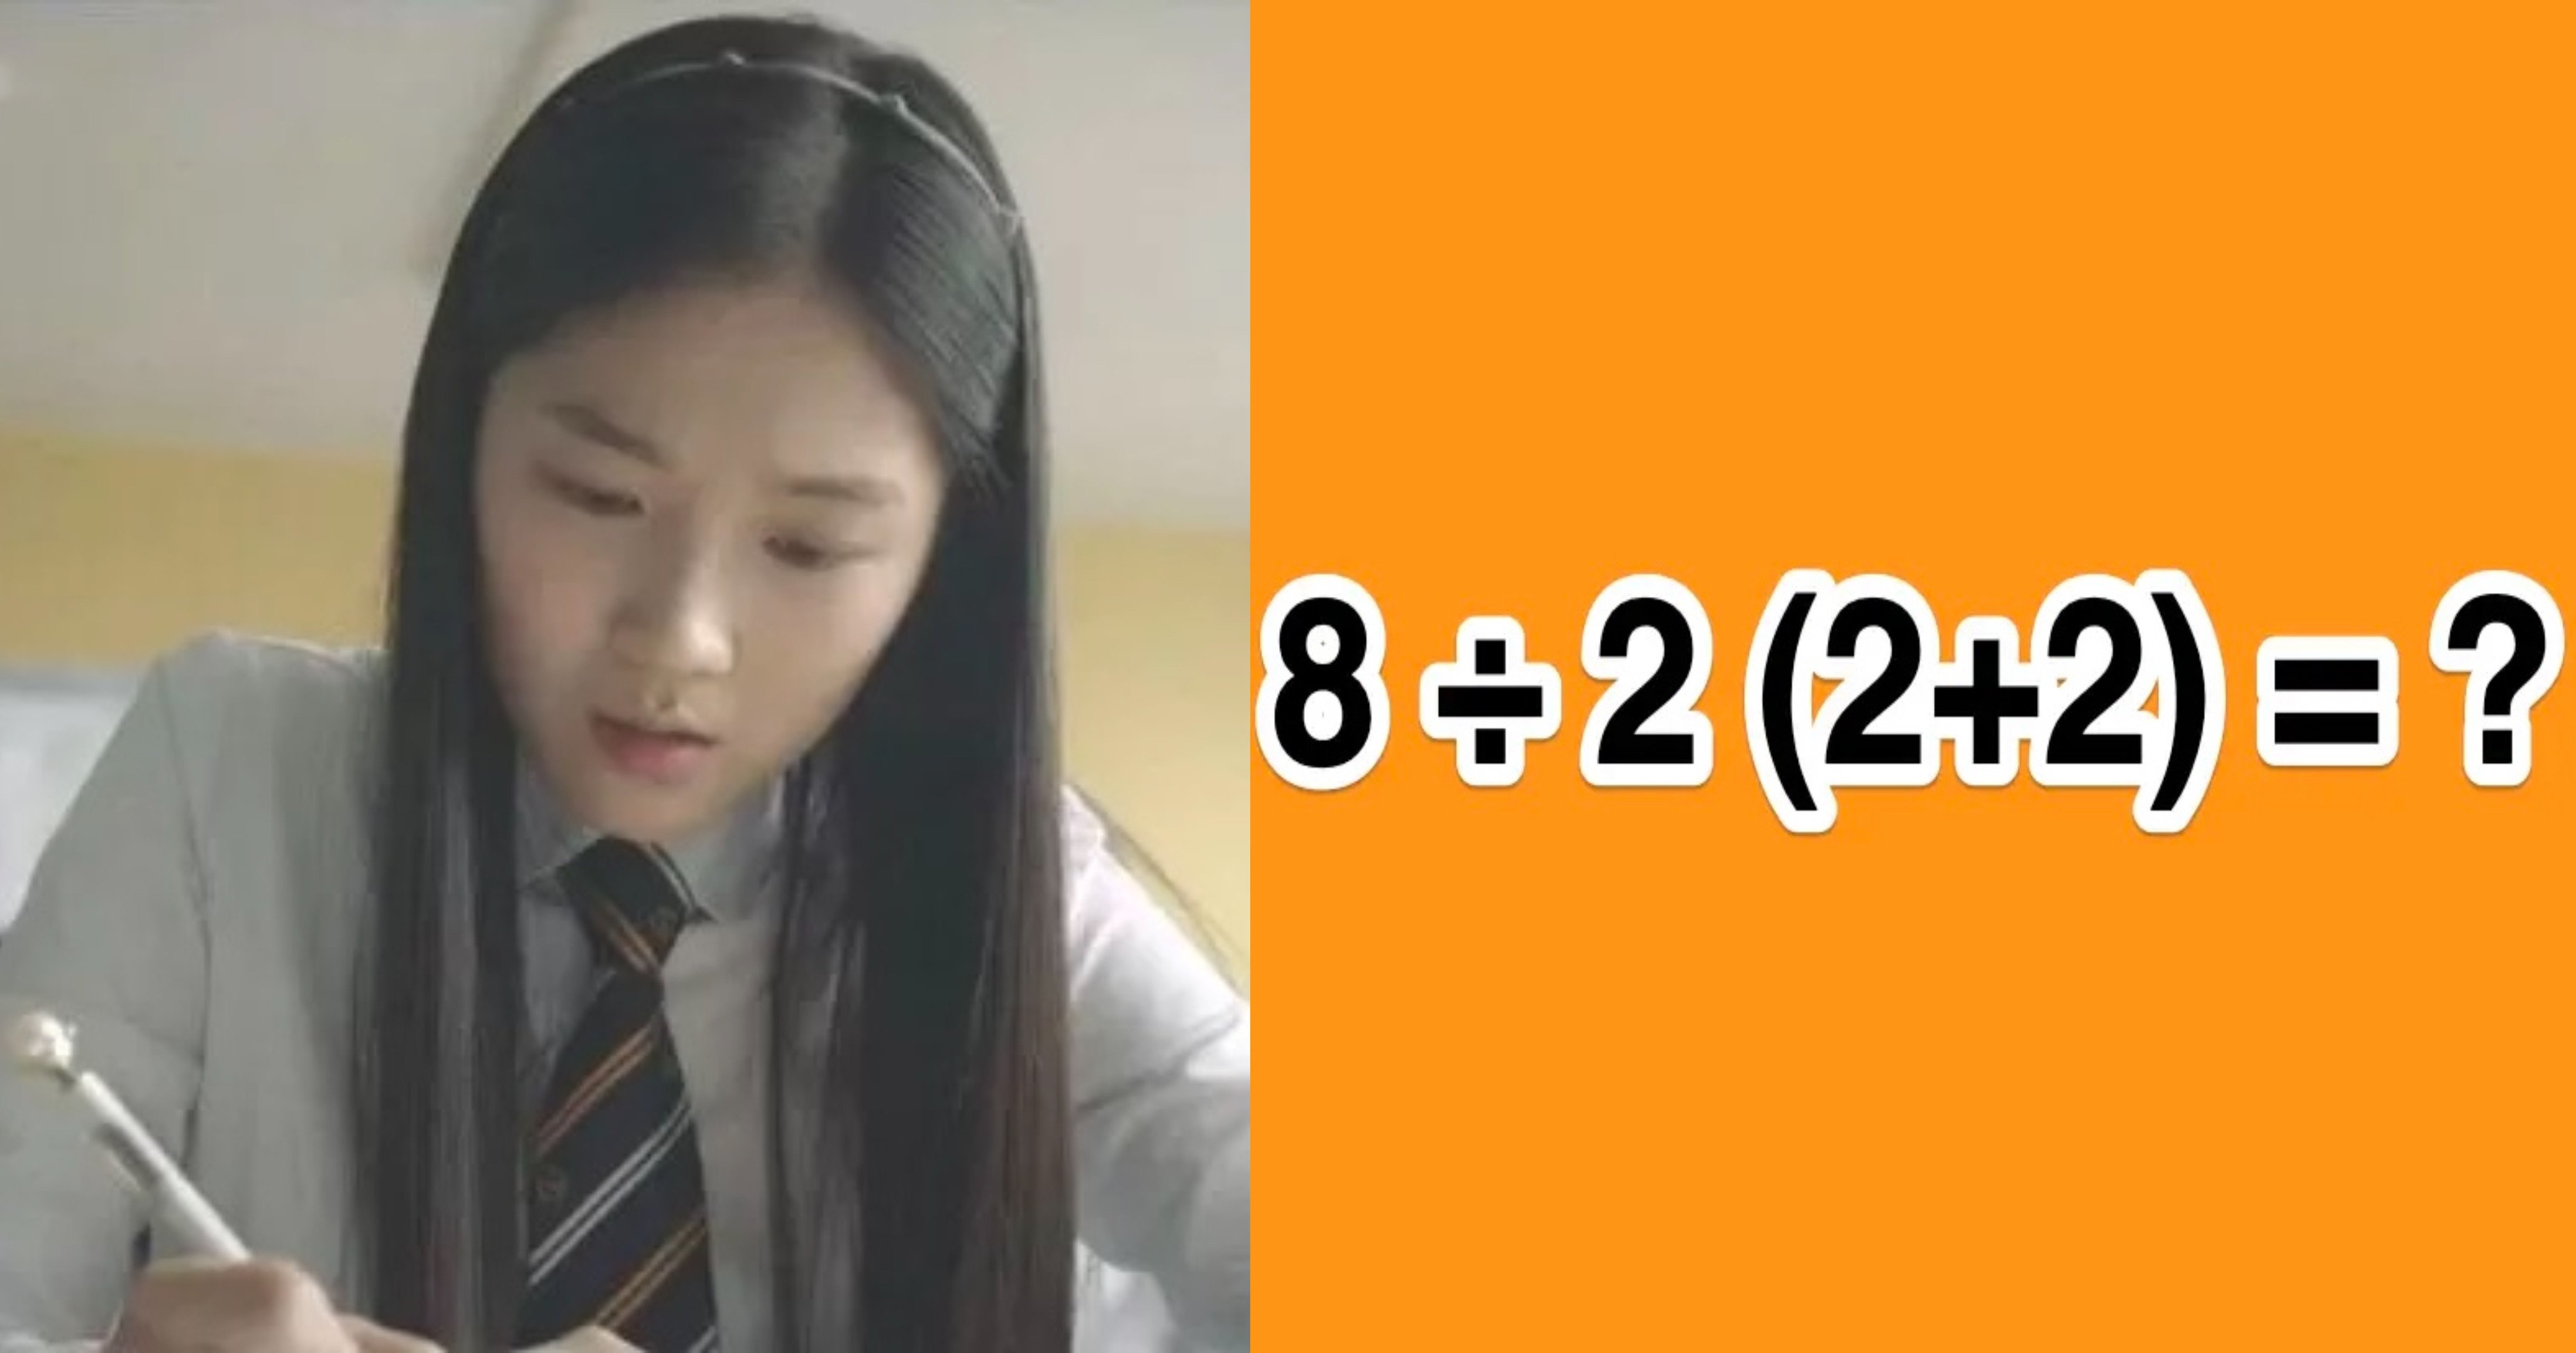 bdb6c556 8bff 414e b4e0 2312ea9c16e7.jpeg?resize=1200,630 - "8÷2(2+2)=의 정답은?"..한국인들 절반이 틀린다고 난리 난 문제의 정답